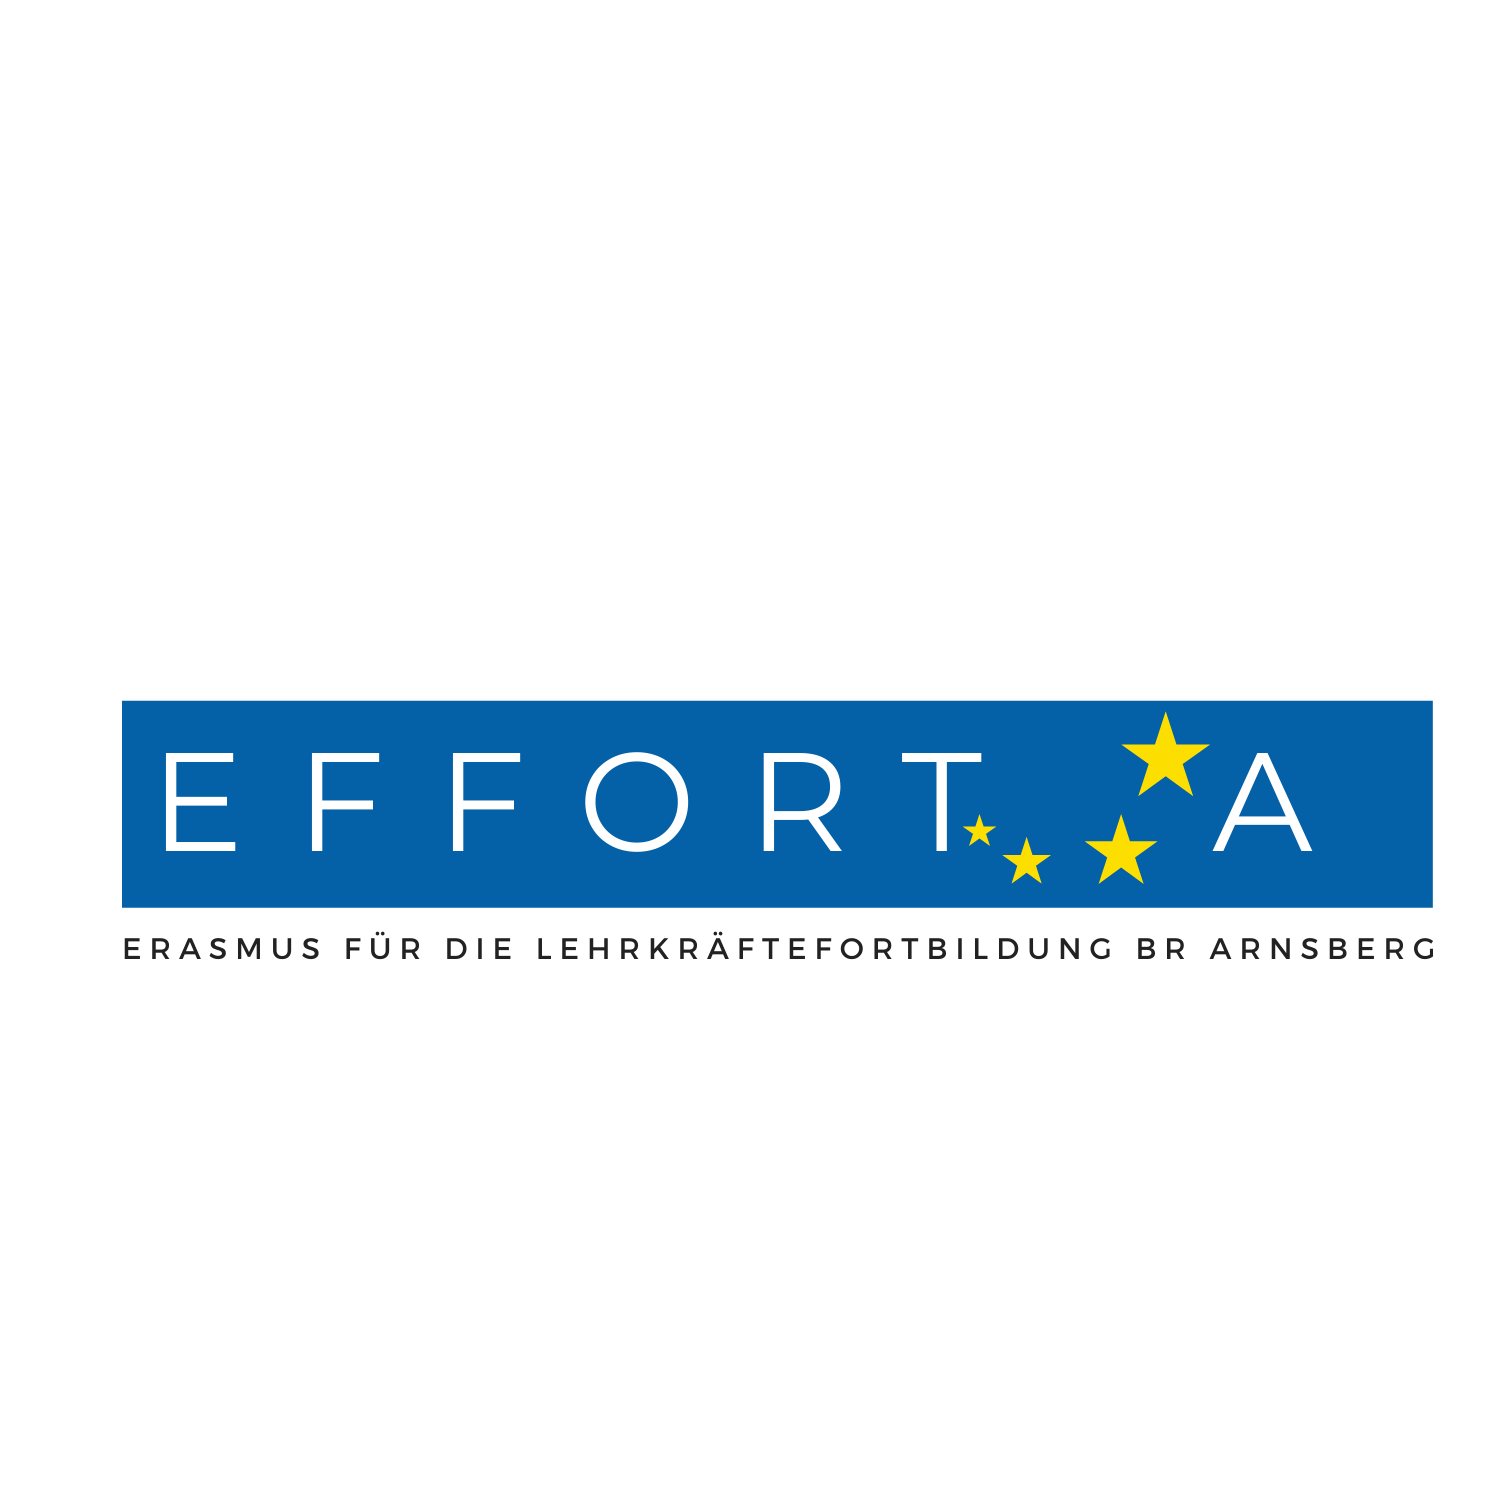 Das Logo von Effort-A.